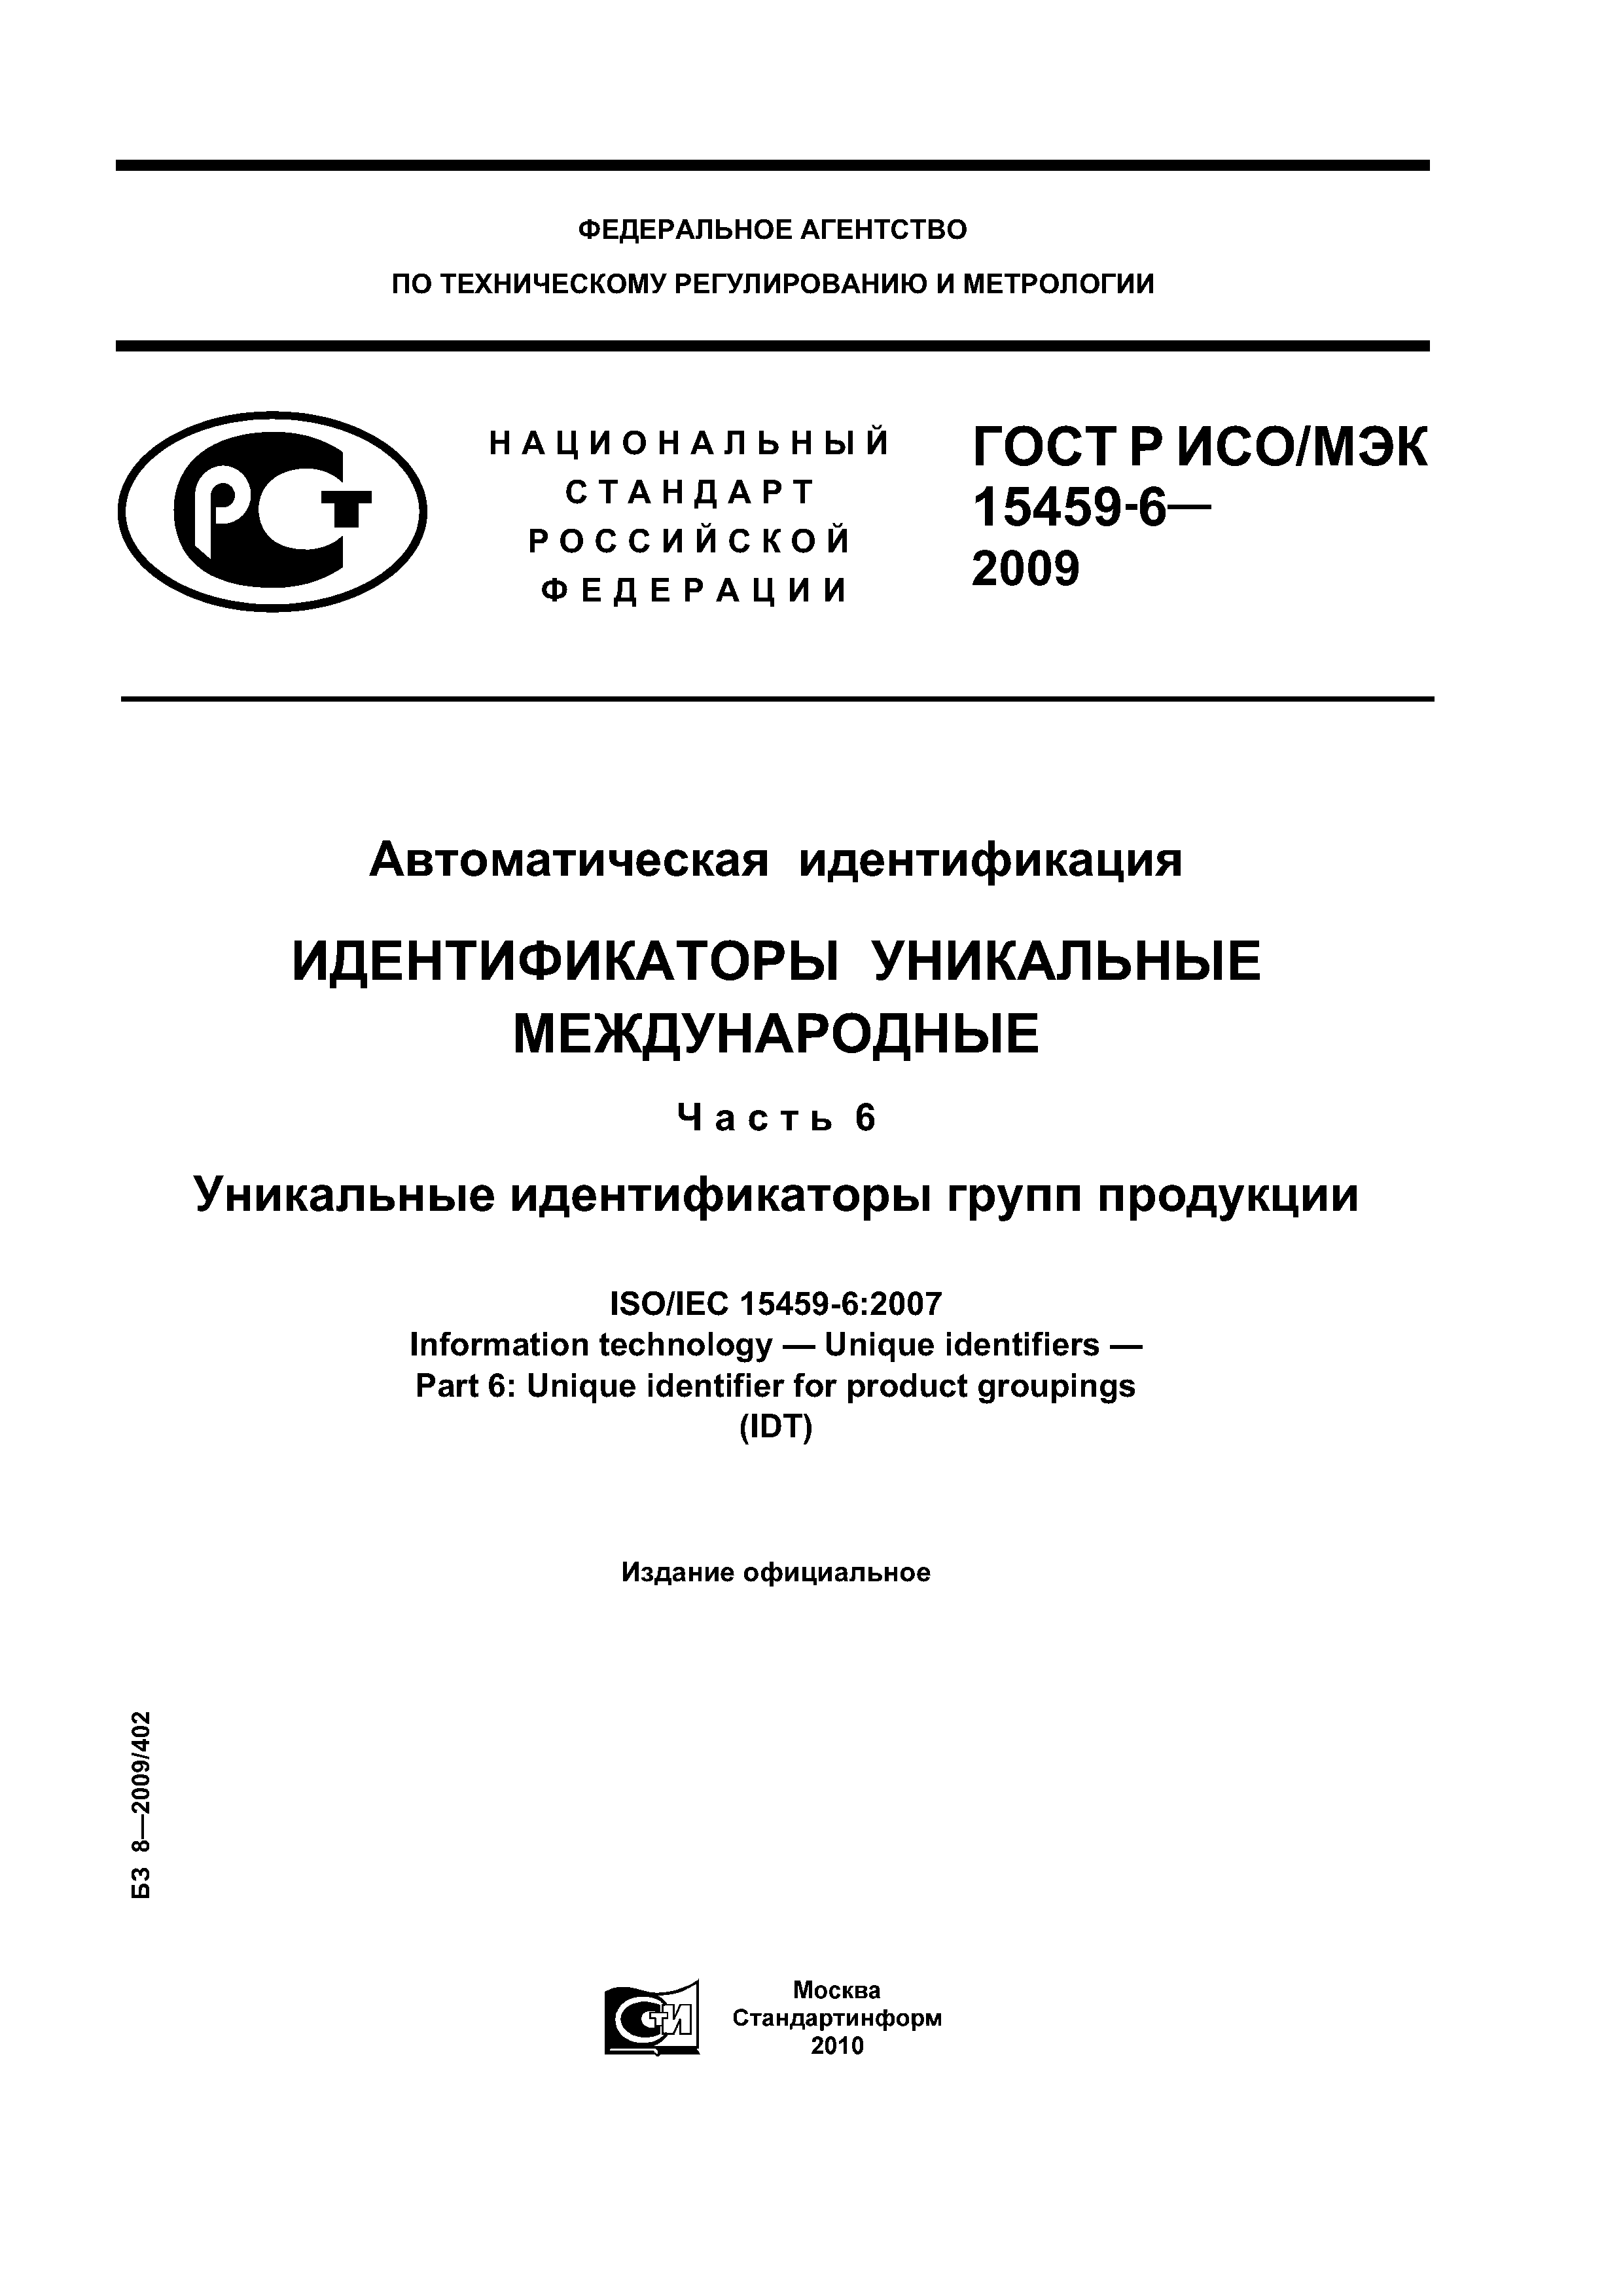 ГОСТ Р ИСО/МЭК 15459-6-2009